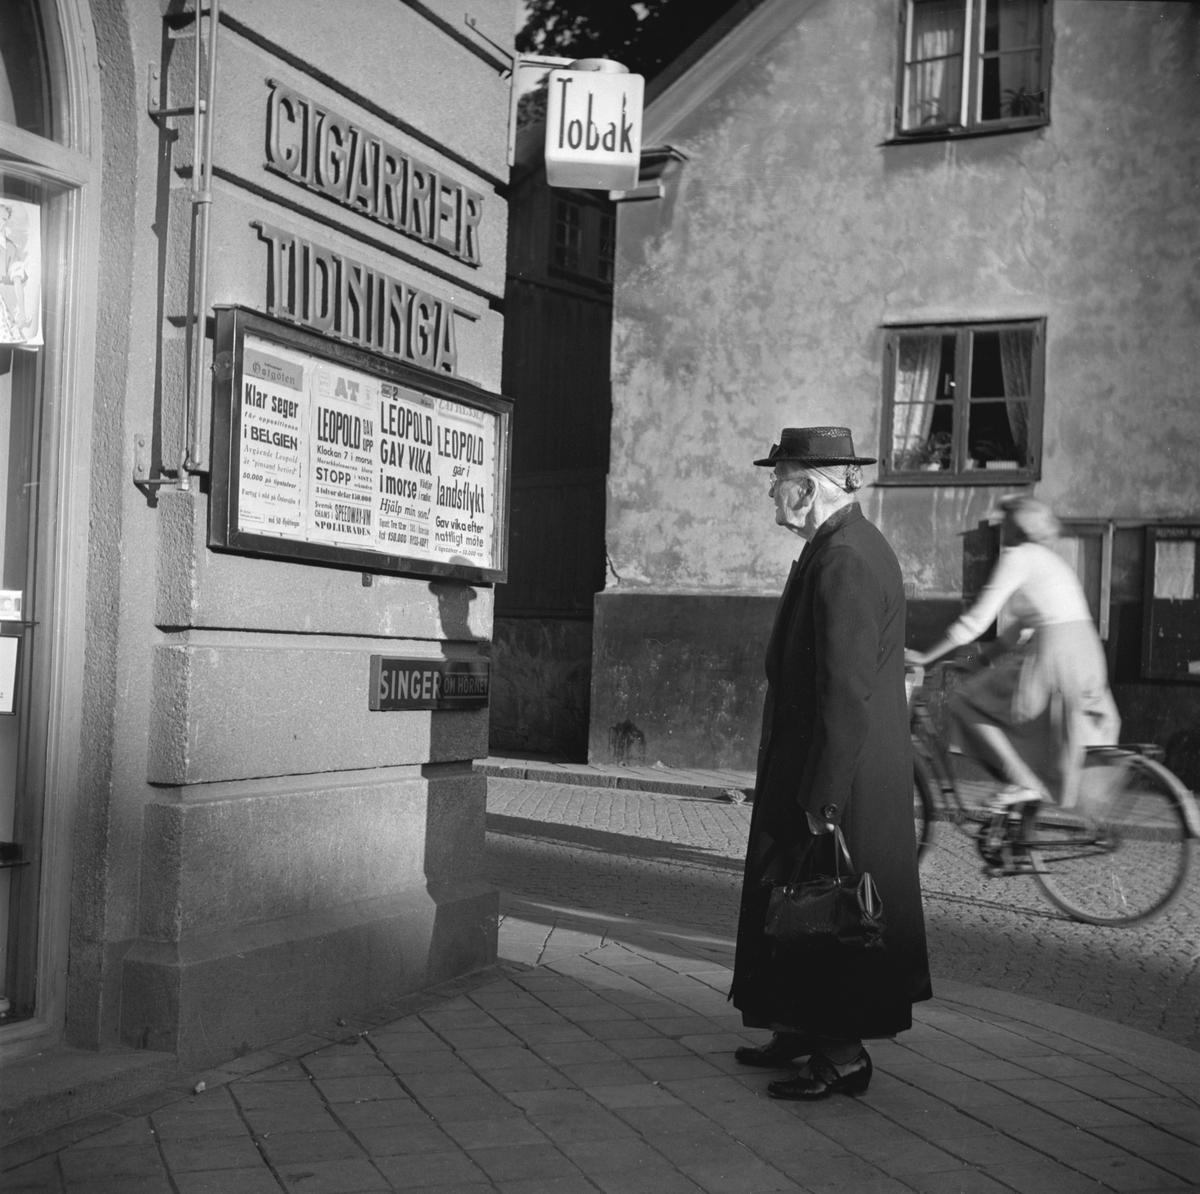 Tobakscentralen i hörnet av Stora Torget och Tanneforsgatan i Linköping. En äldre dam läser kvällstidningarnas löpsedlar. Likt många andra svenskar följde hon sannolikt med intresse utvecklingen av efterkrigsårens konstitutionella oro i Belgien. Kung Leopold III var ju änkling efter den mycket populära svenska prinsessan Astrid, som så tragiskt omkommit i en bilolycka. Denna septemberdag 1951 berättade löpsedlarna om den belgiska krisens upplösning. Kung Leopold avsade sig kronan till förmån för sin äldste son, kronprins Baudouin. Upplysningsvis drevs Tobakscentralen fram till 1957 av Bertha Palmqvist. Därefter innehades den av Lennart Danell.